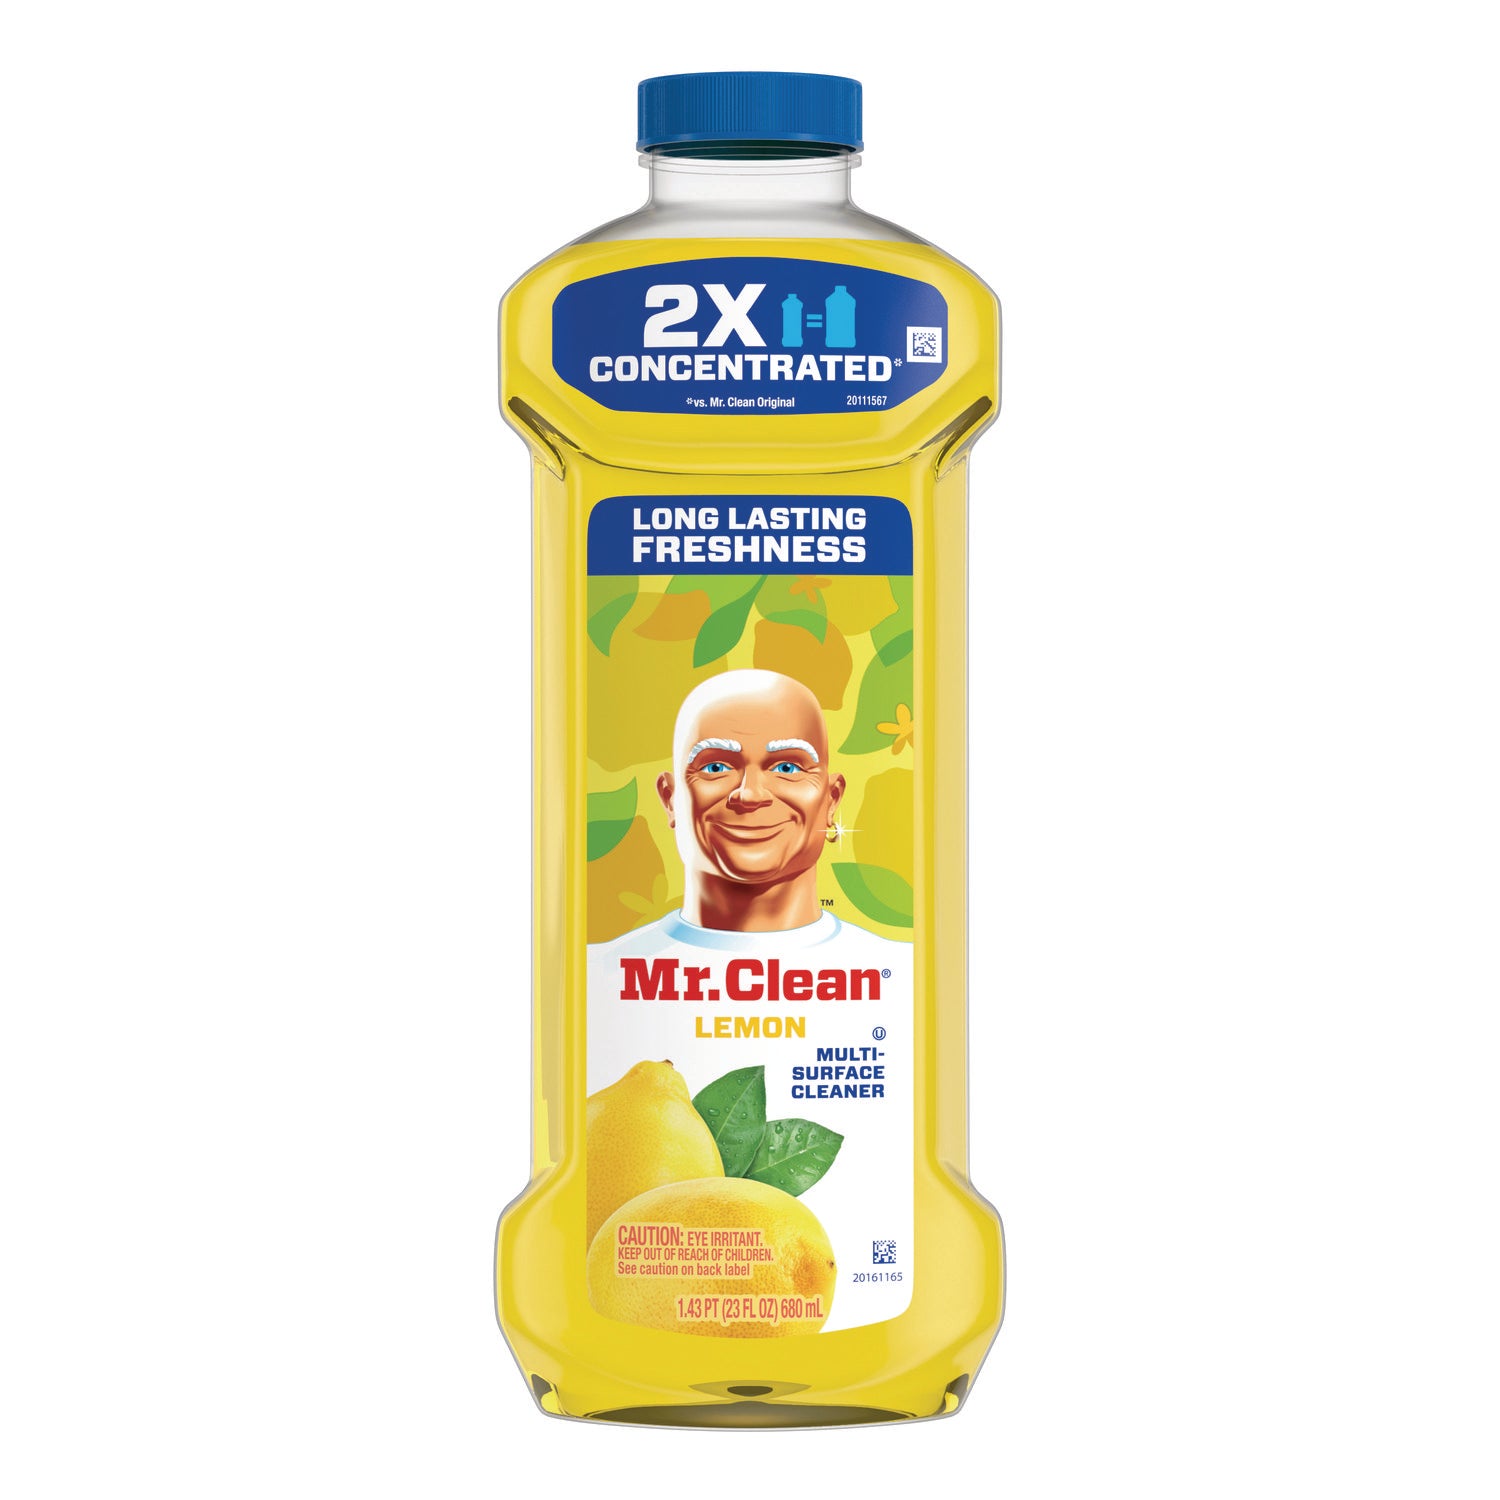 multipurpose-cleaning-solution-lemon-23-oz-bottle-9-carton_pgc11292 - 1